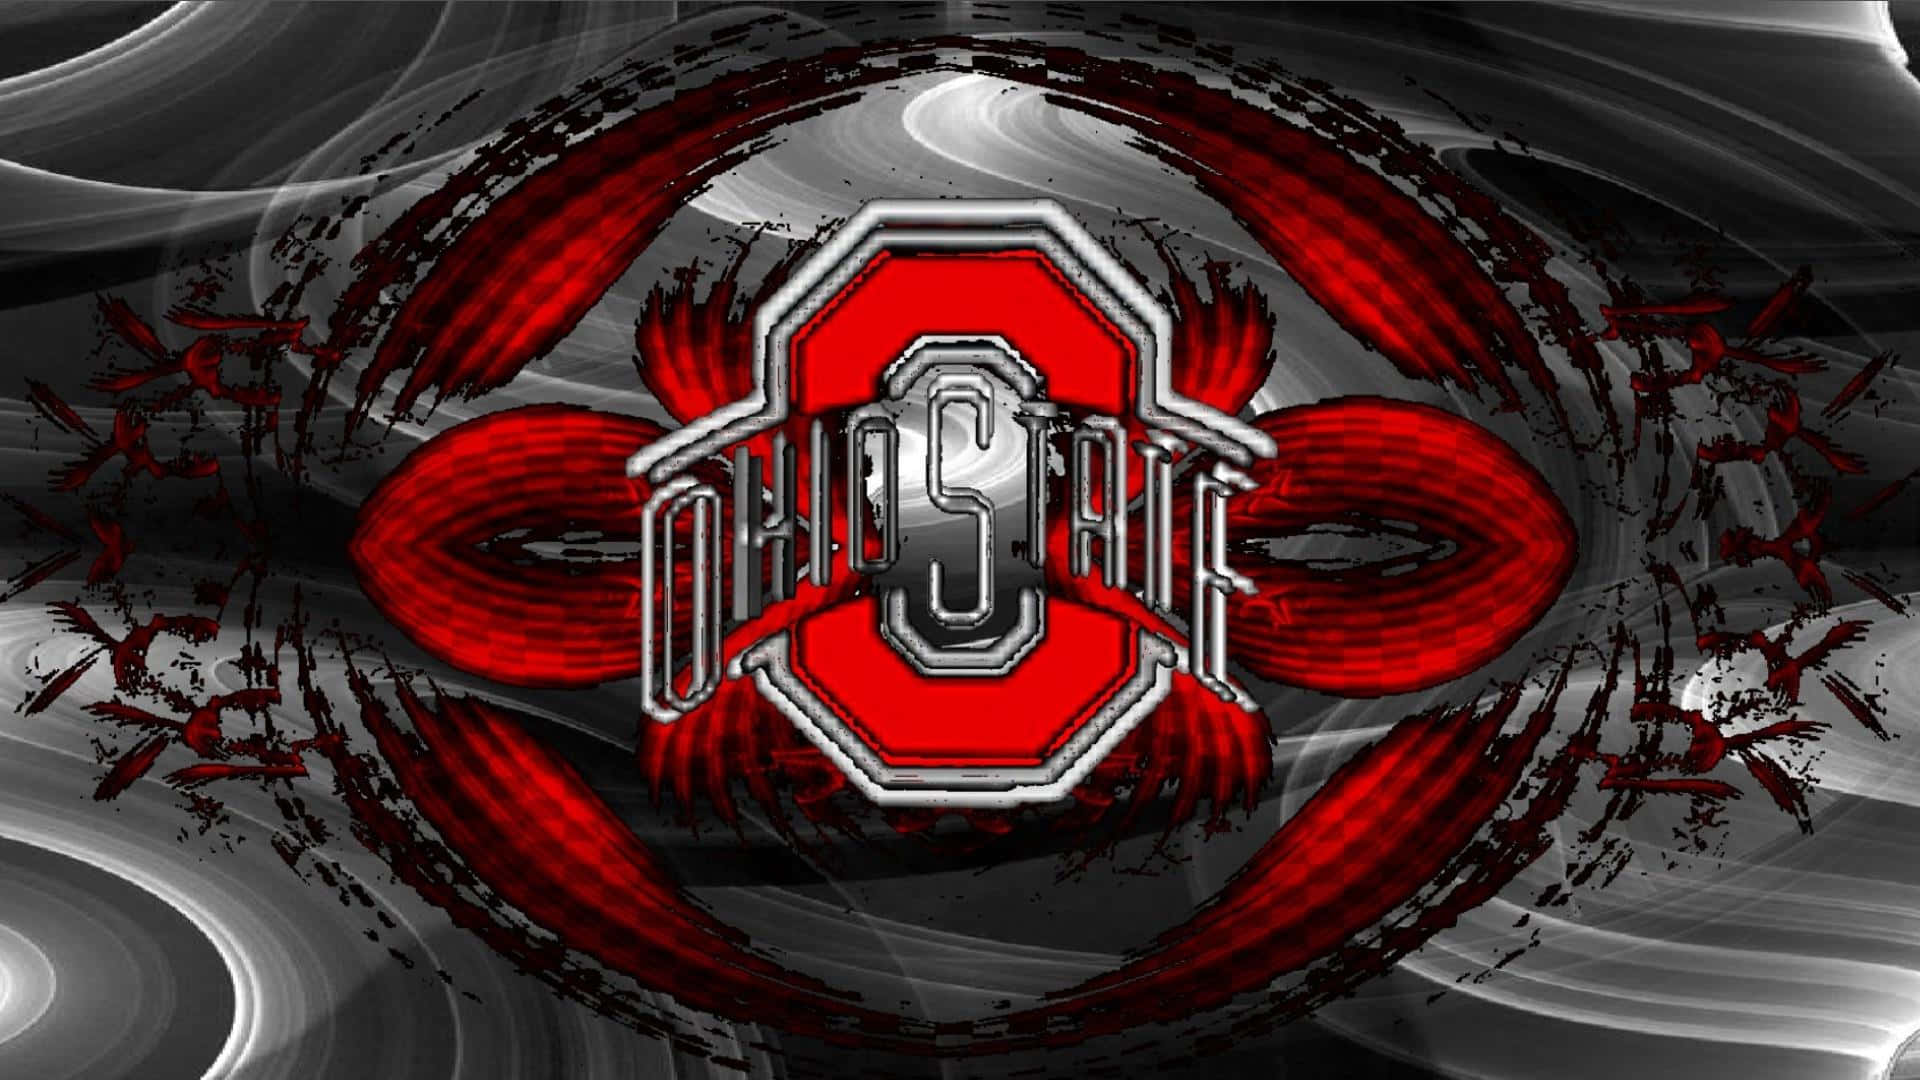 Diseñoabstracto En Rojo Y Plata Del Logotipo De Ohio State. Fondo de pantalla